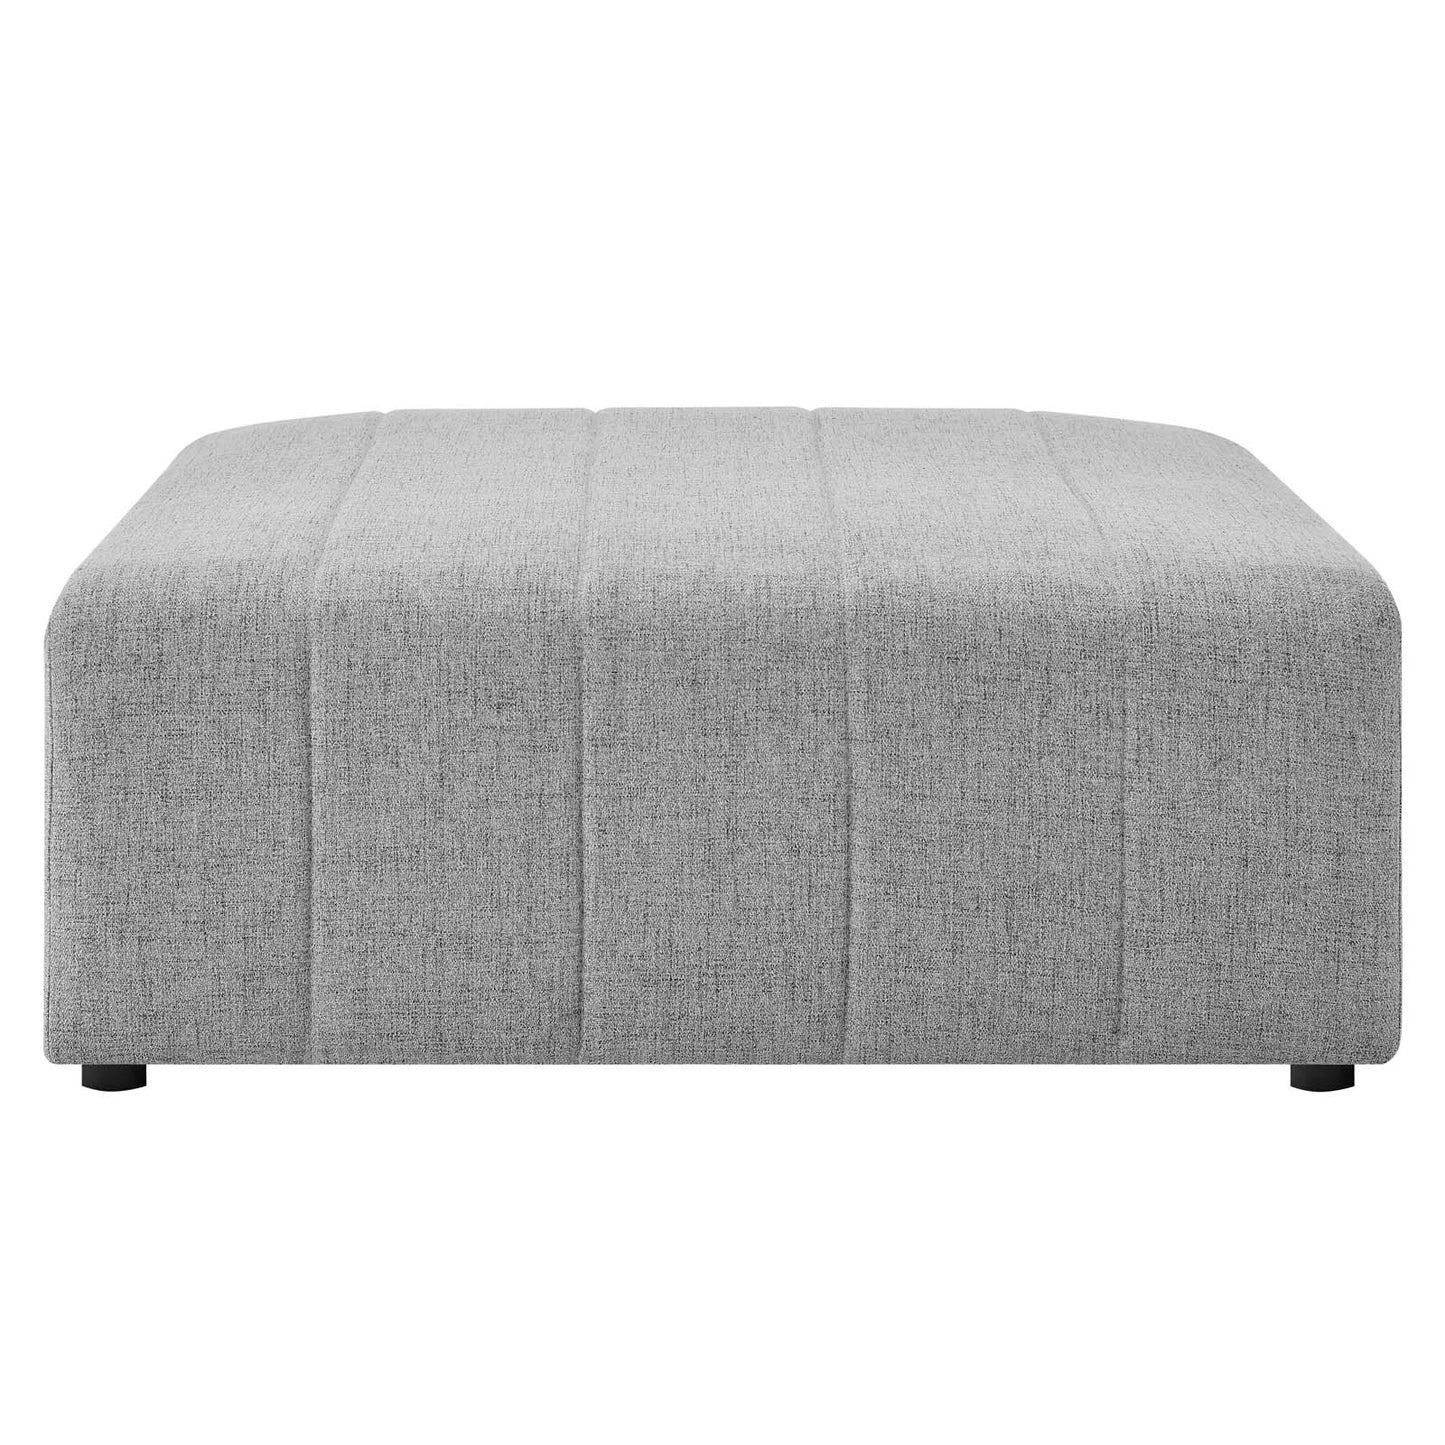 Bartlett Upholstered Fabric 4-Piece Sectional Sofa Light Gray EEI-4516-LGR